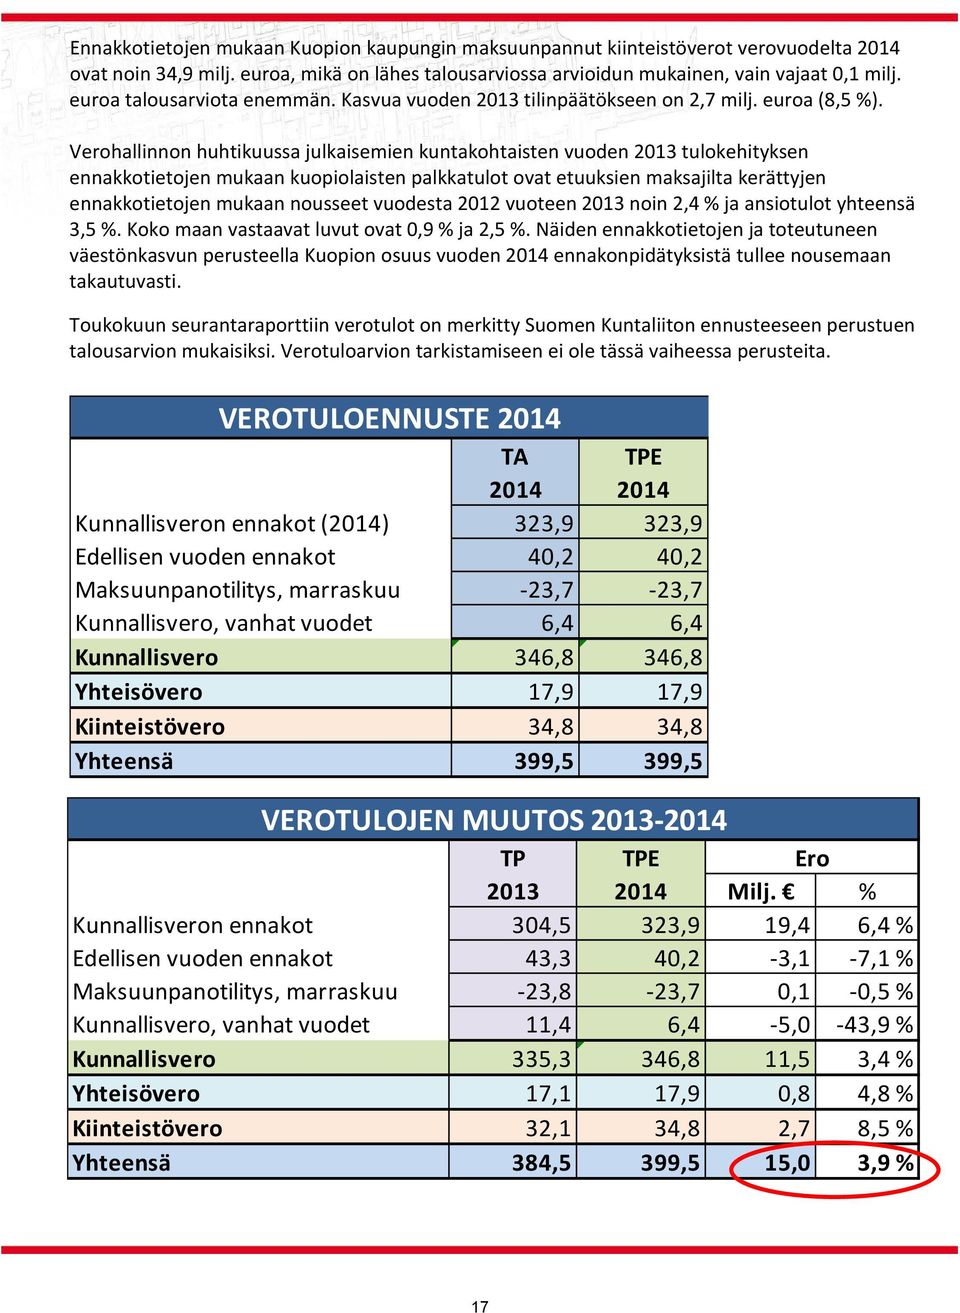 Verohallinnon huhtikuussa julkaisemien kuntakohtaisten vuoden 2013 tulokehityksen ennakkotietojen mukaan kuopiolaisten palkkatulot ovat etuuksien maksajilta kerättyjen ennakkotietojen mukaan nousseet